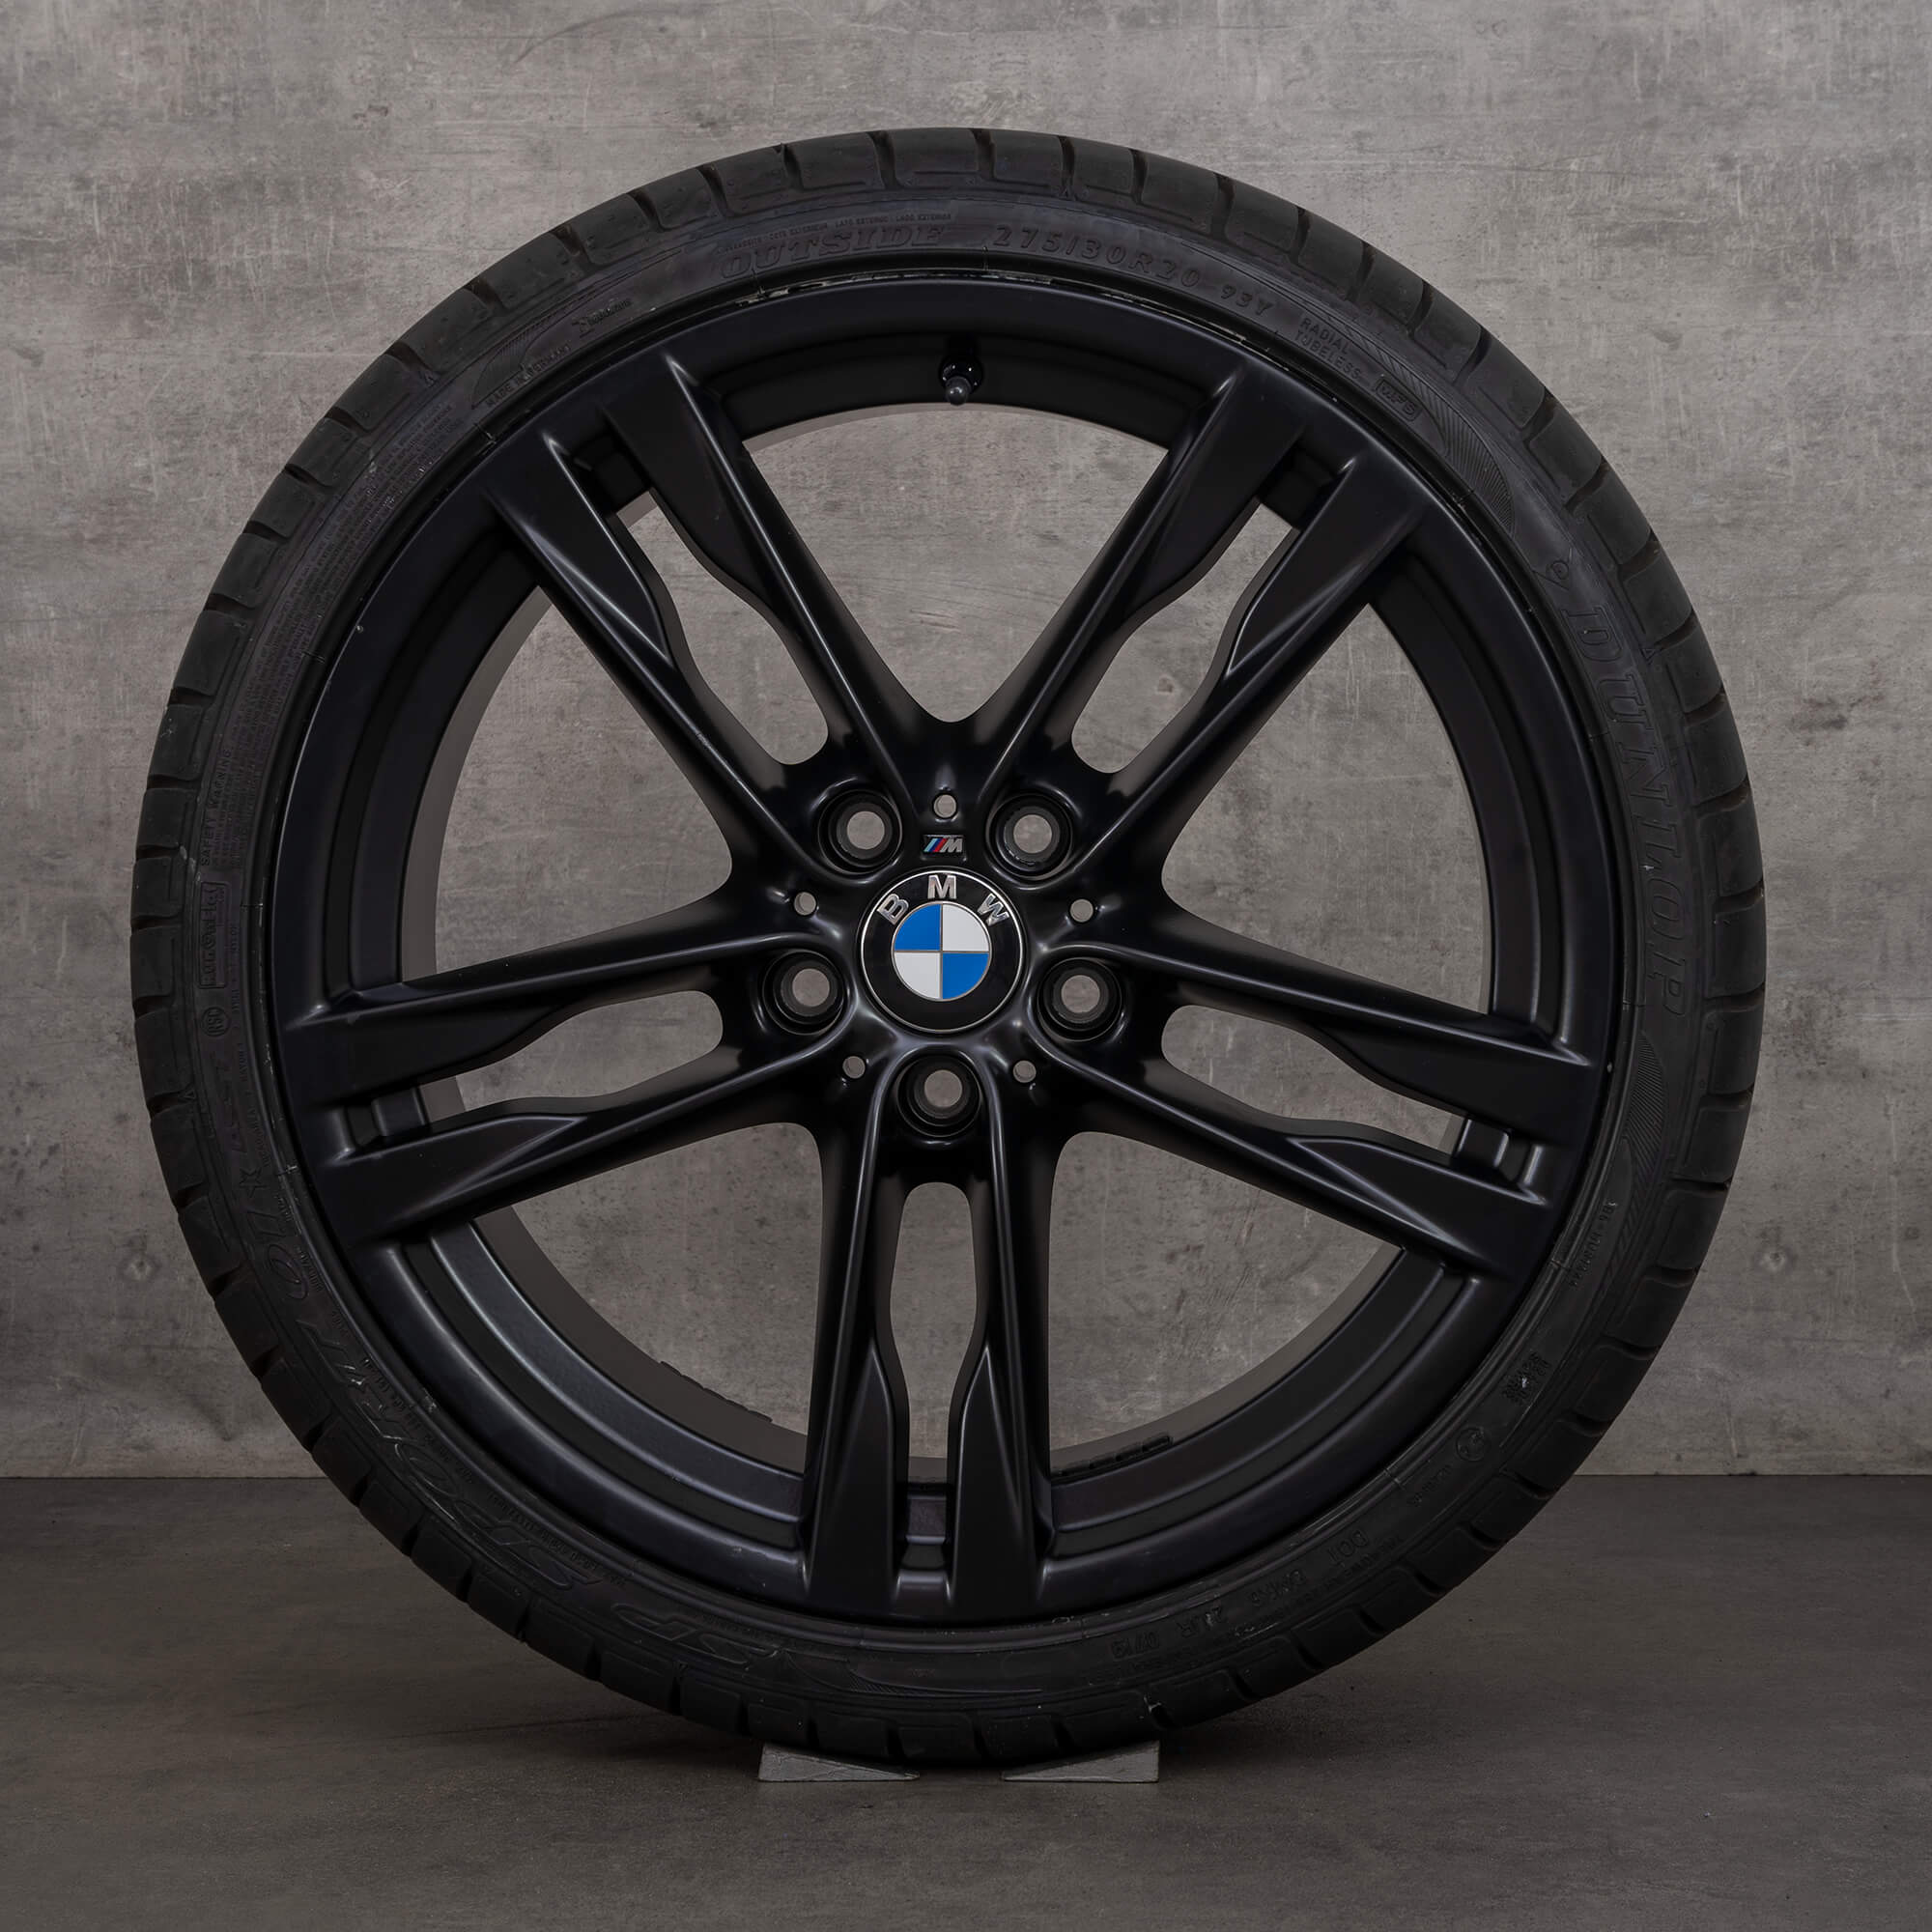 BMW série 5 F10 F11 6 F12 F13 jantes pneus de verão 20 polegadas 373 M 7843715